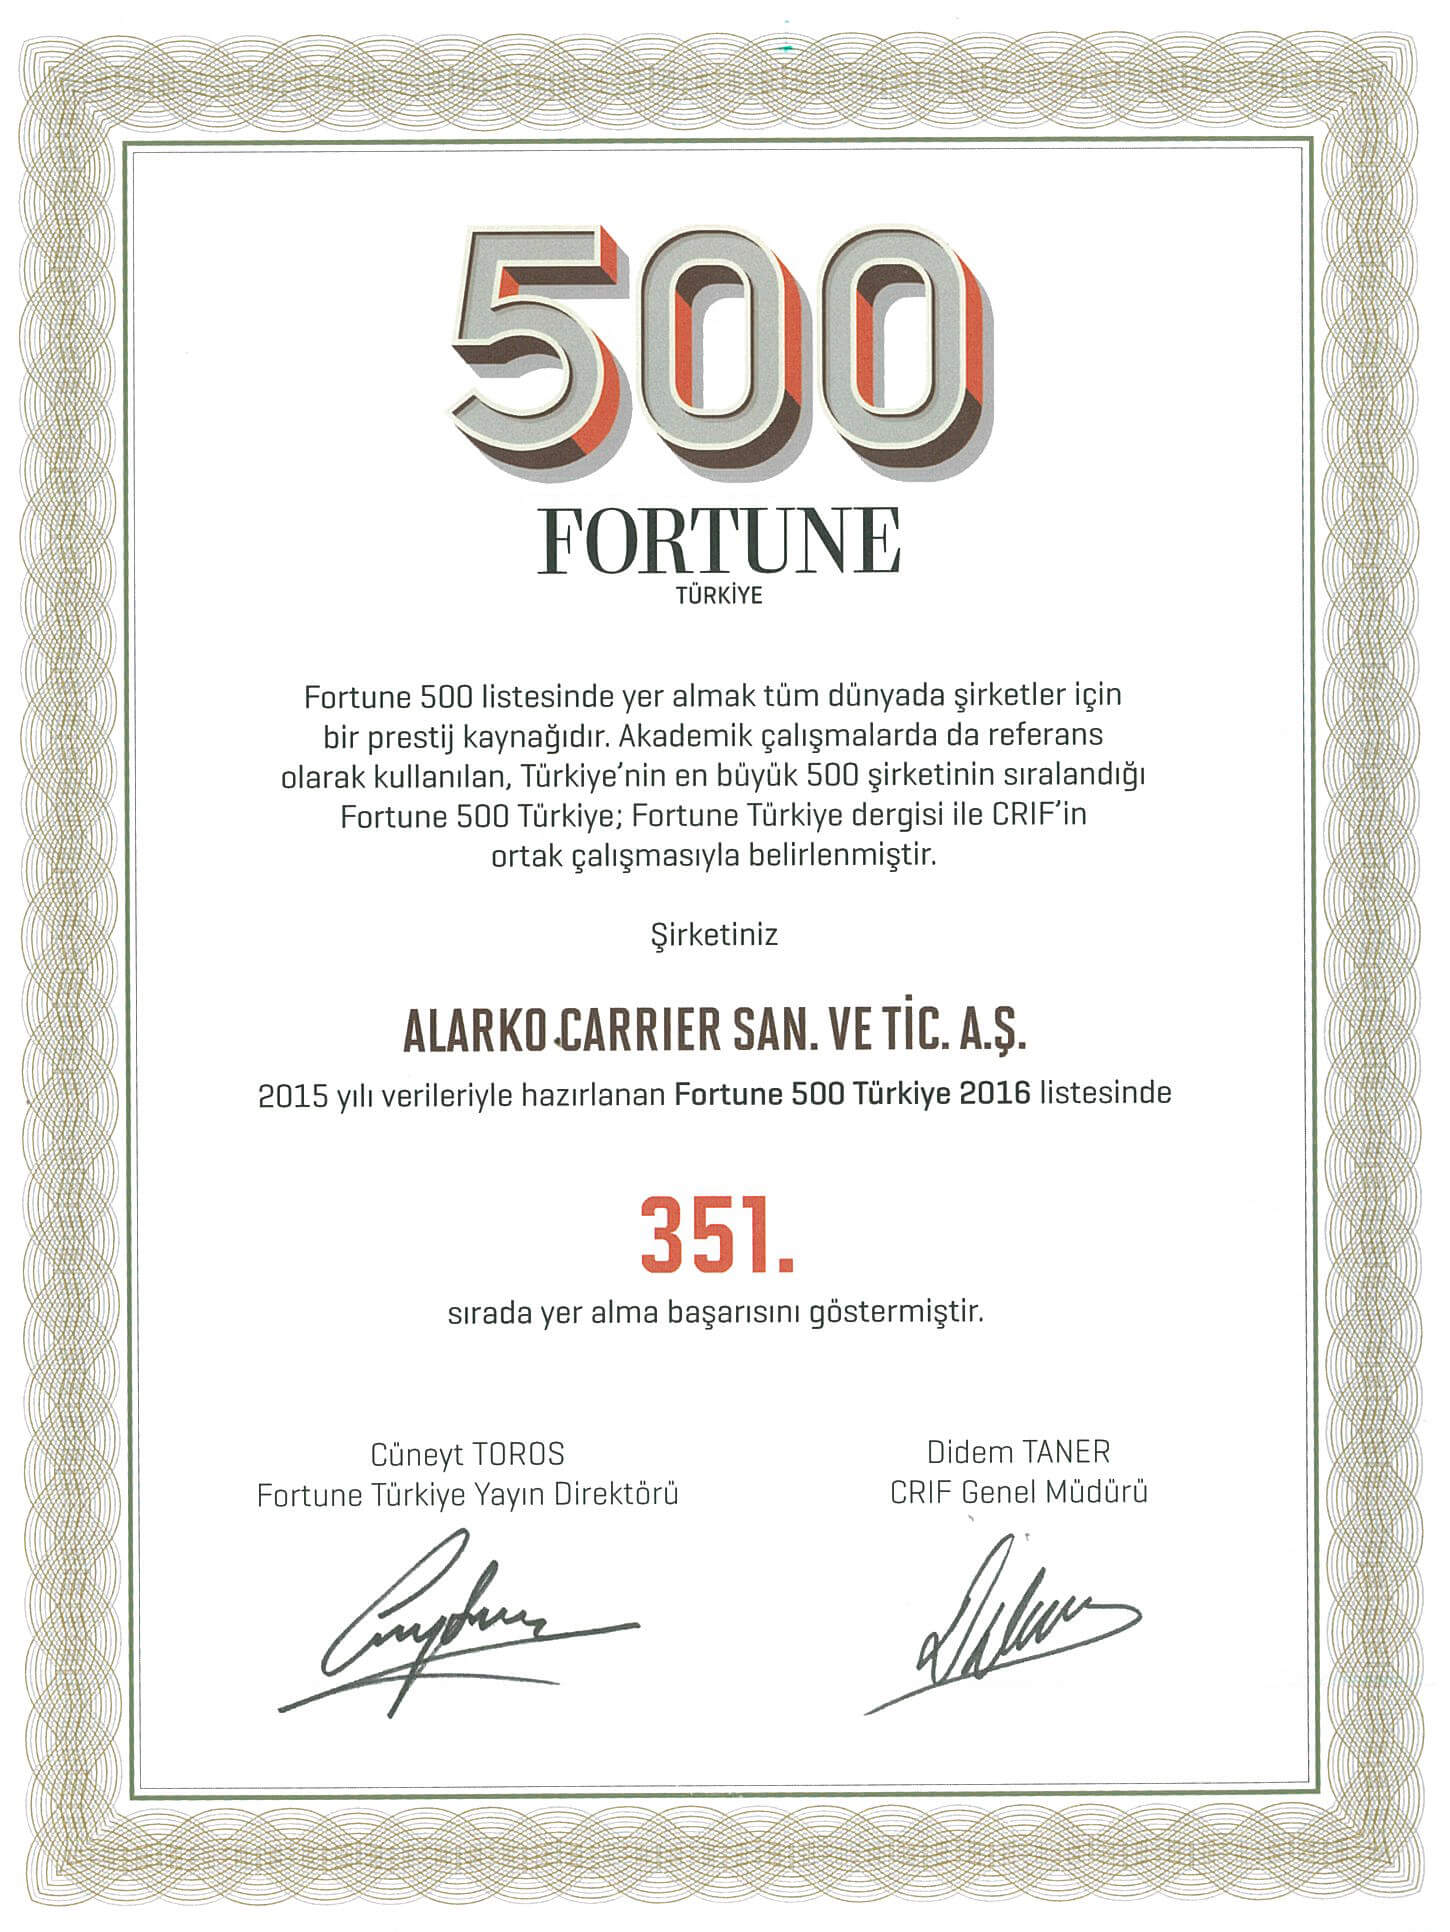 Alarko-Carrier Fortune Dergisi’nin “En Büyük 500 Şirket” Listesinde